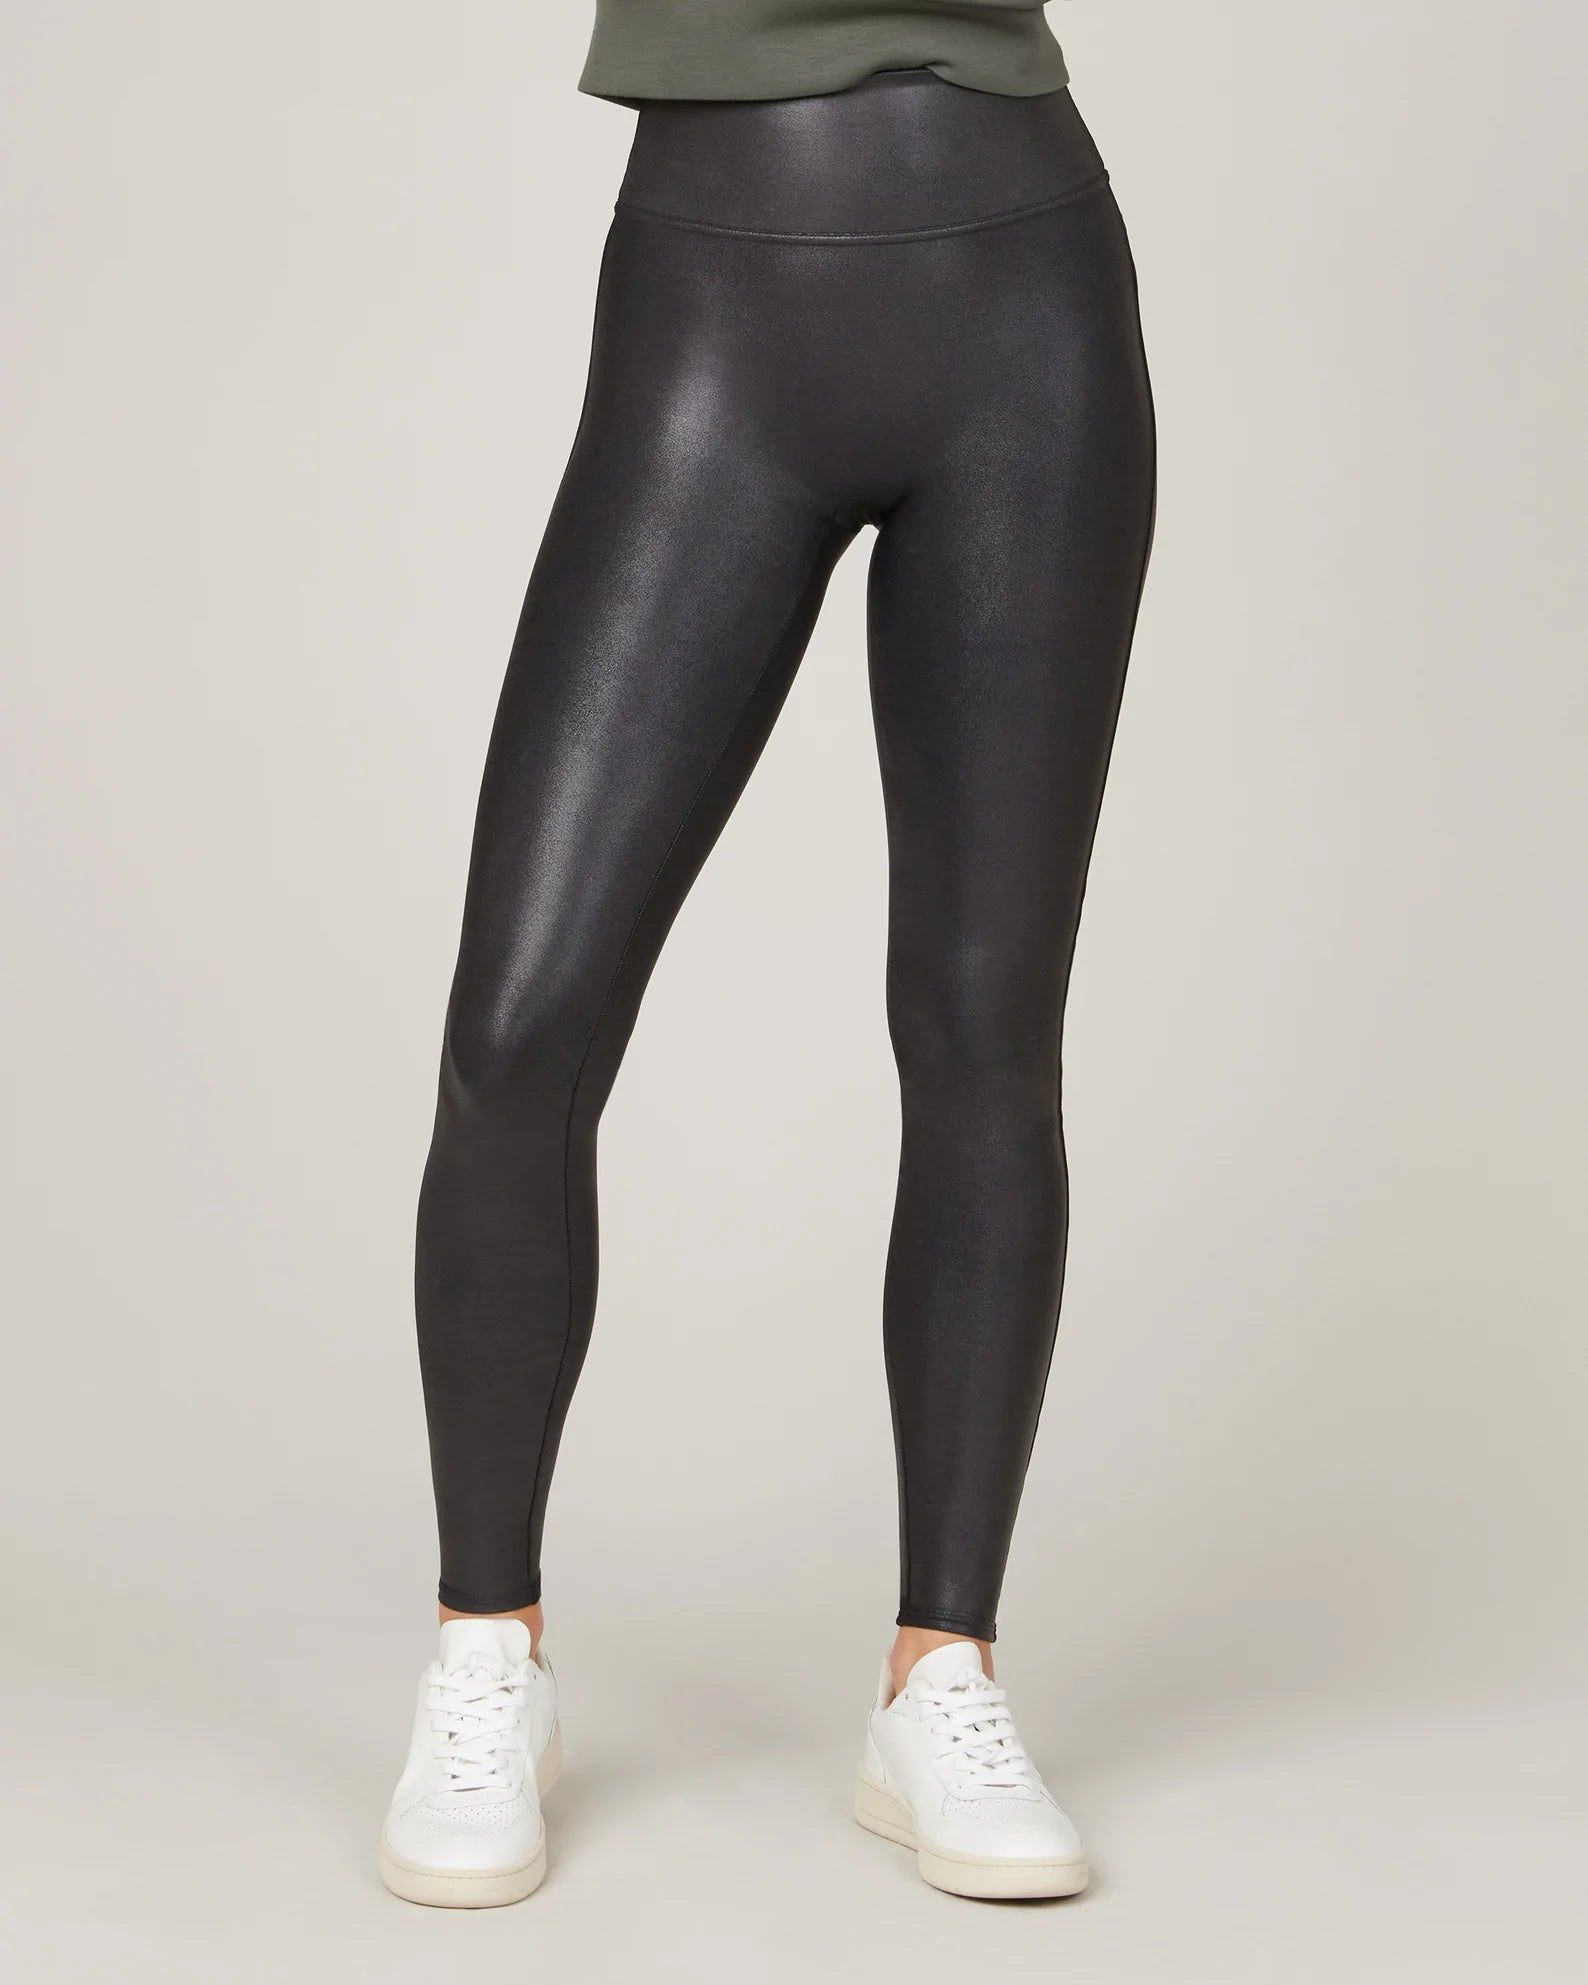 Spanx: Faux Leather Leggings Black - 2437Q – The Vogue Boutique